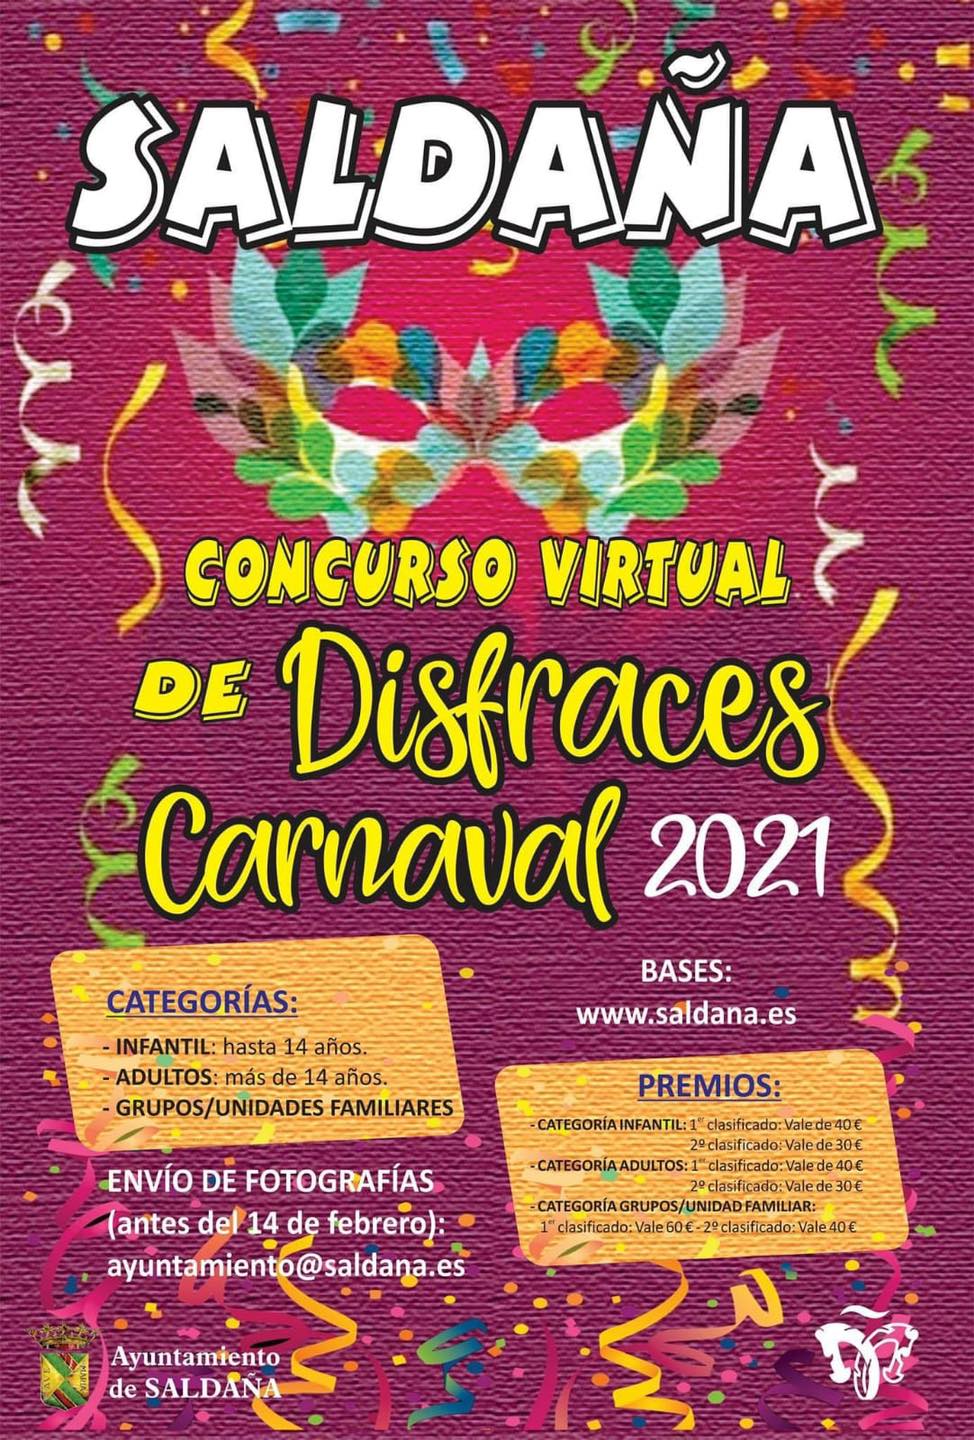 Concurso virtual de disfraces de carnaval (2021) - Saldaña (Palencia)